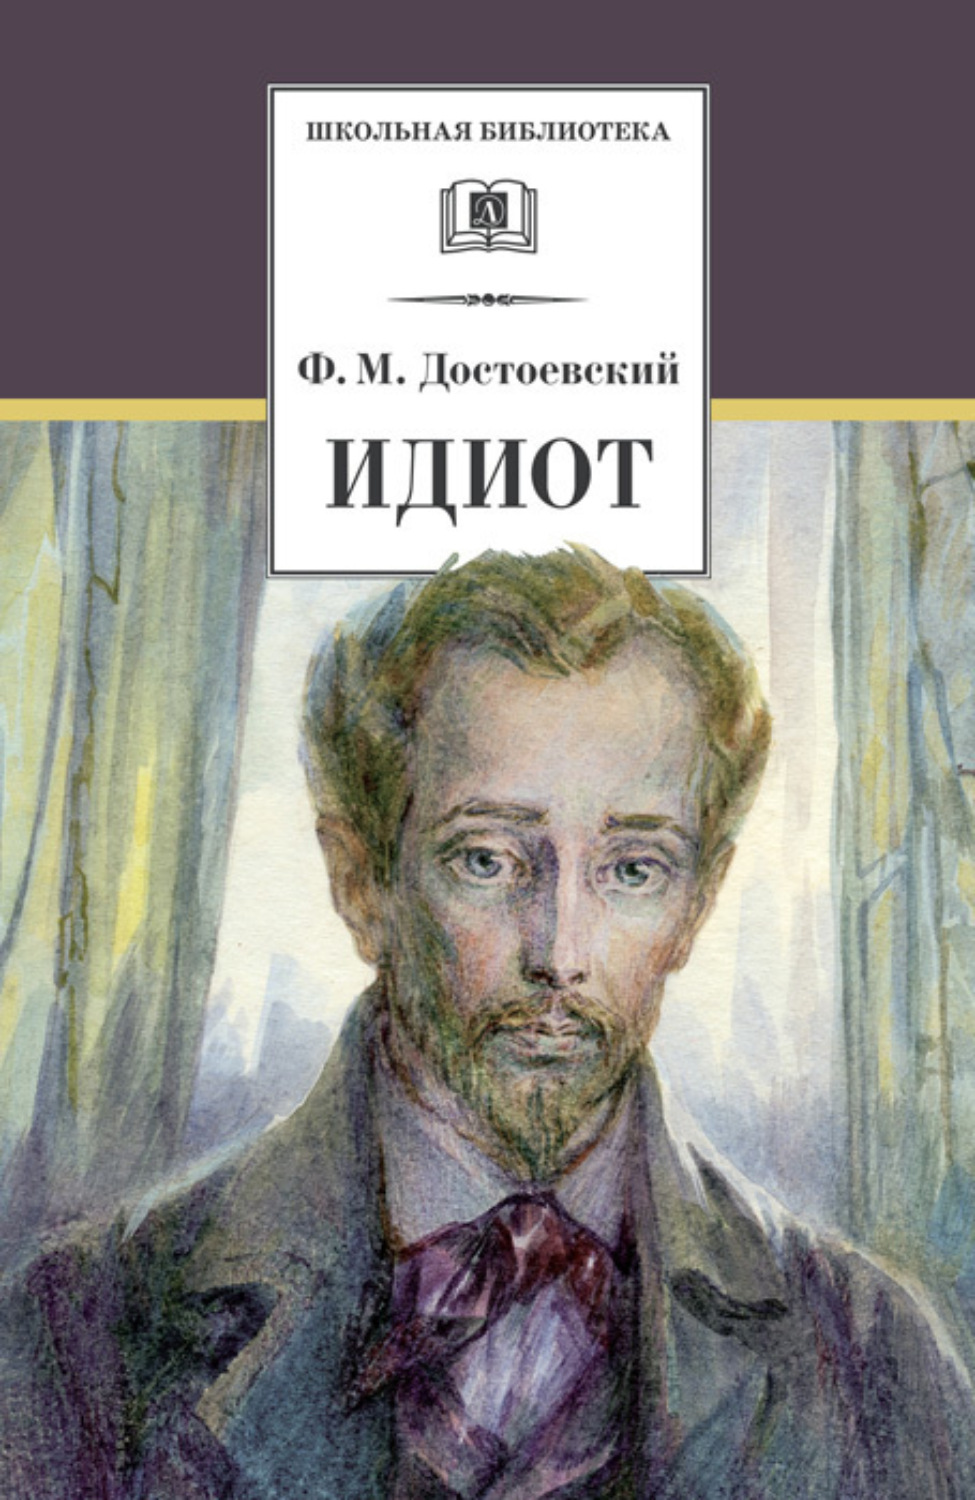 Федор Достоевский книга Идиот – скачать fb2, epub, pdf бесплатно ...
